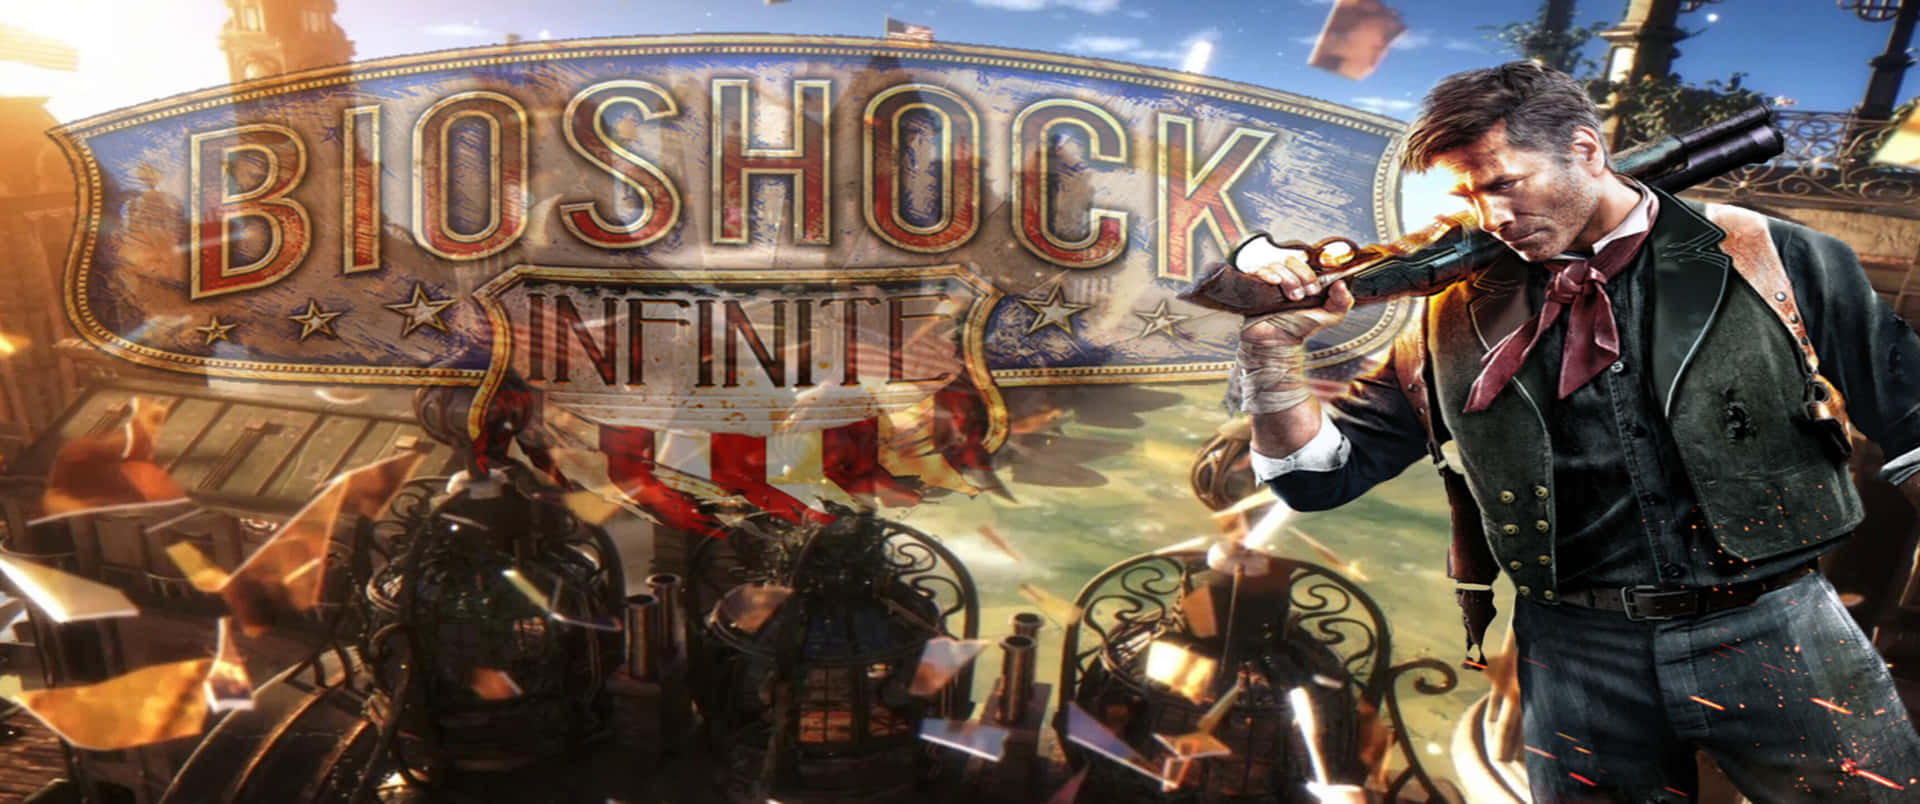 Översiktav Booker Och Columbia 3440x1440p Bioshock Infinite Bakgrund.